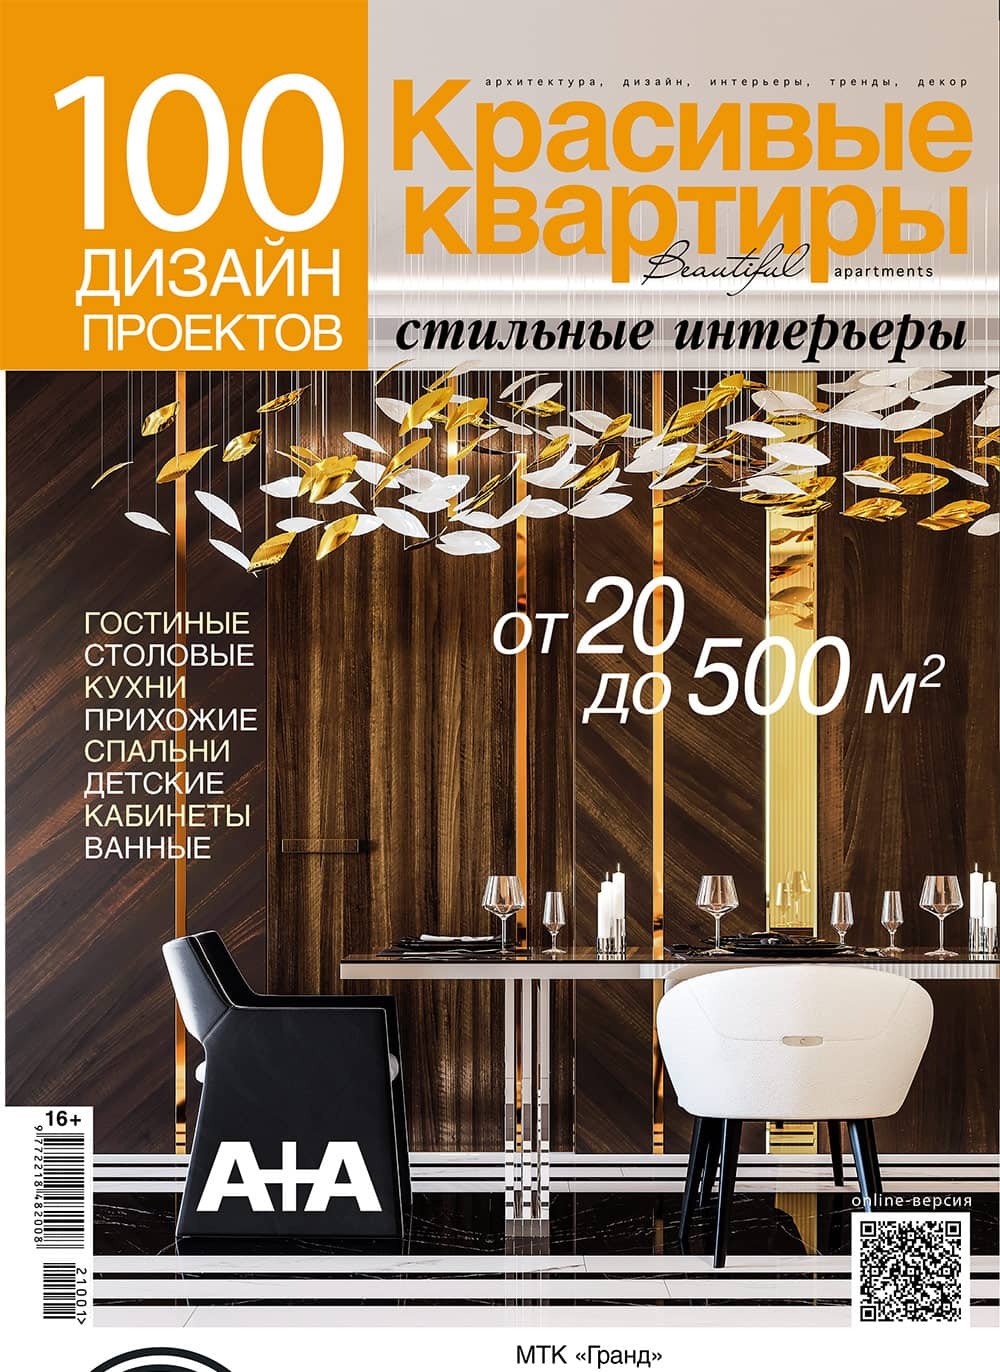 100 дизайн-проектов №2021/2022